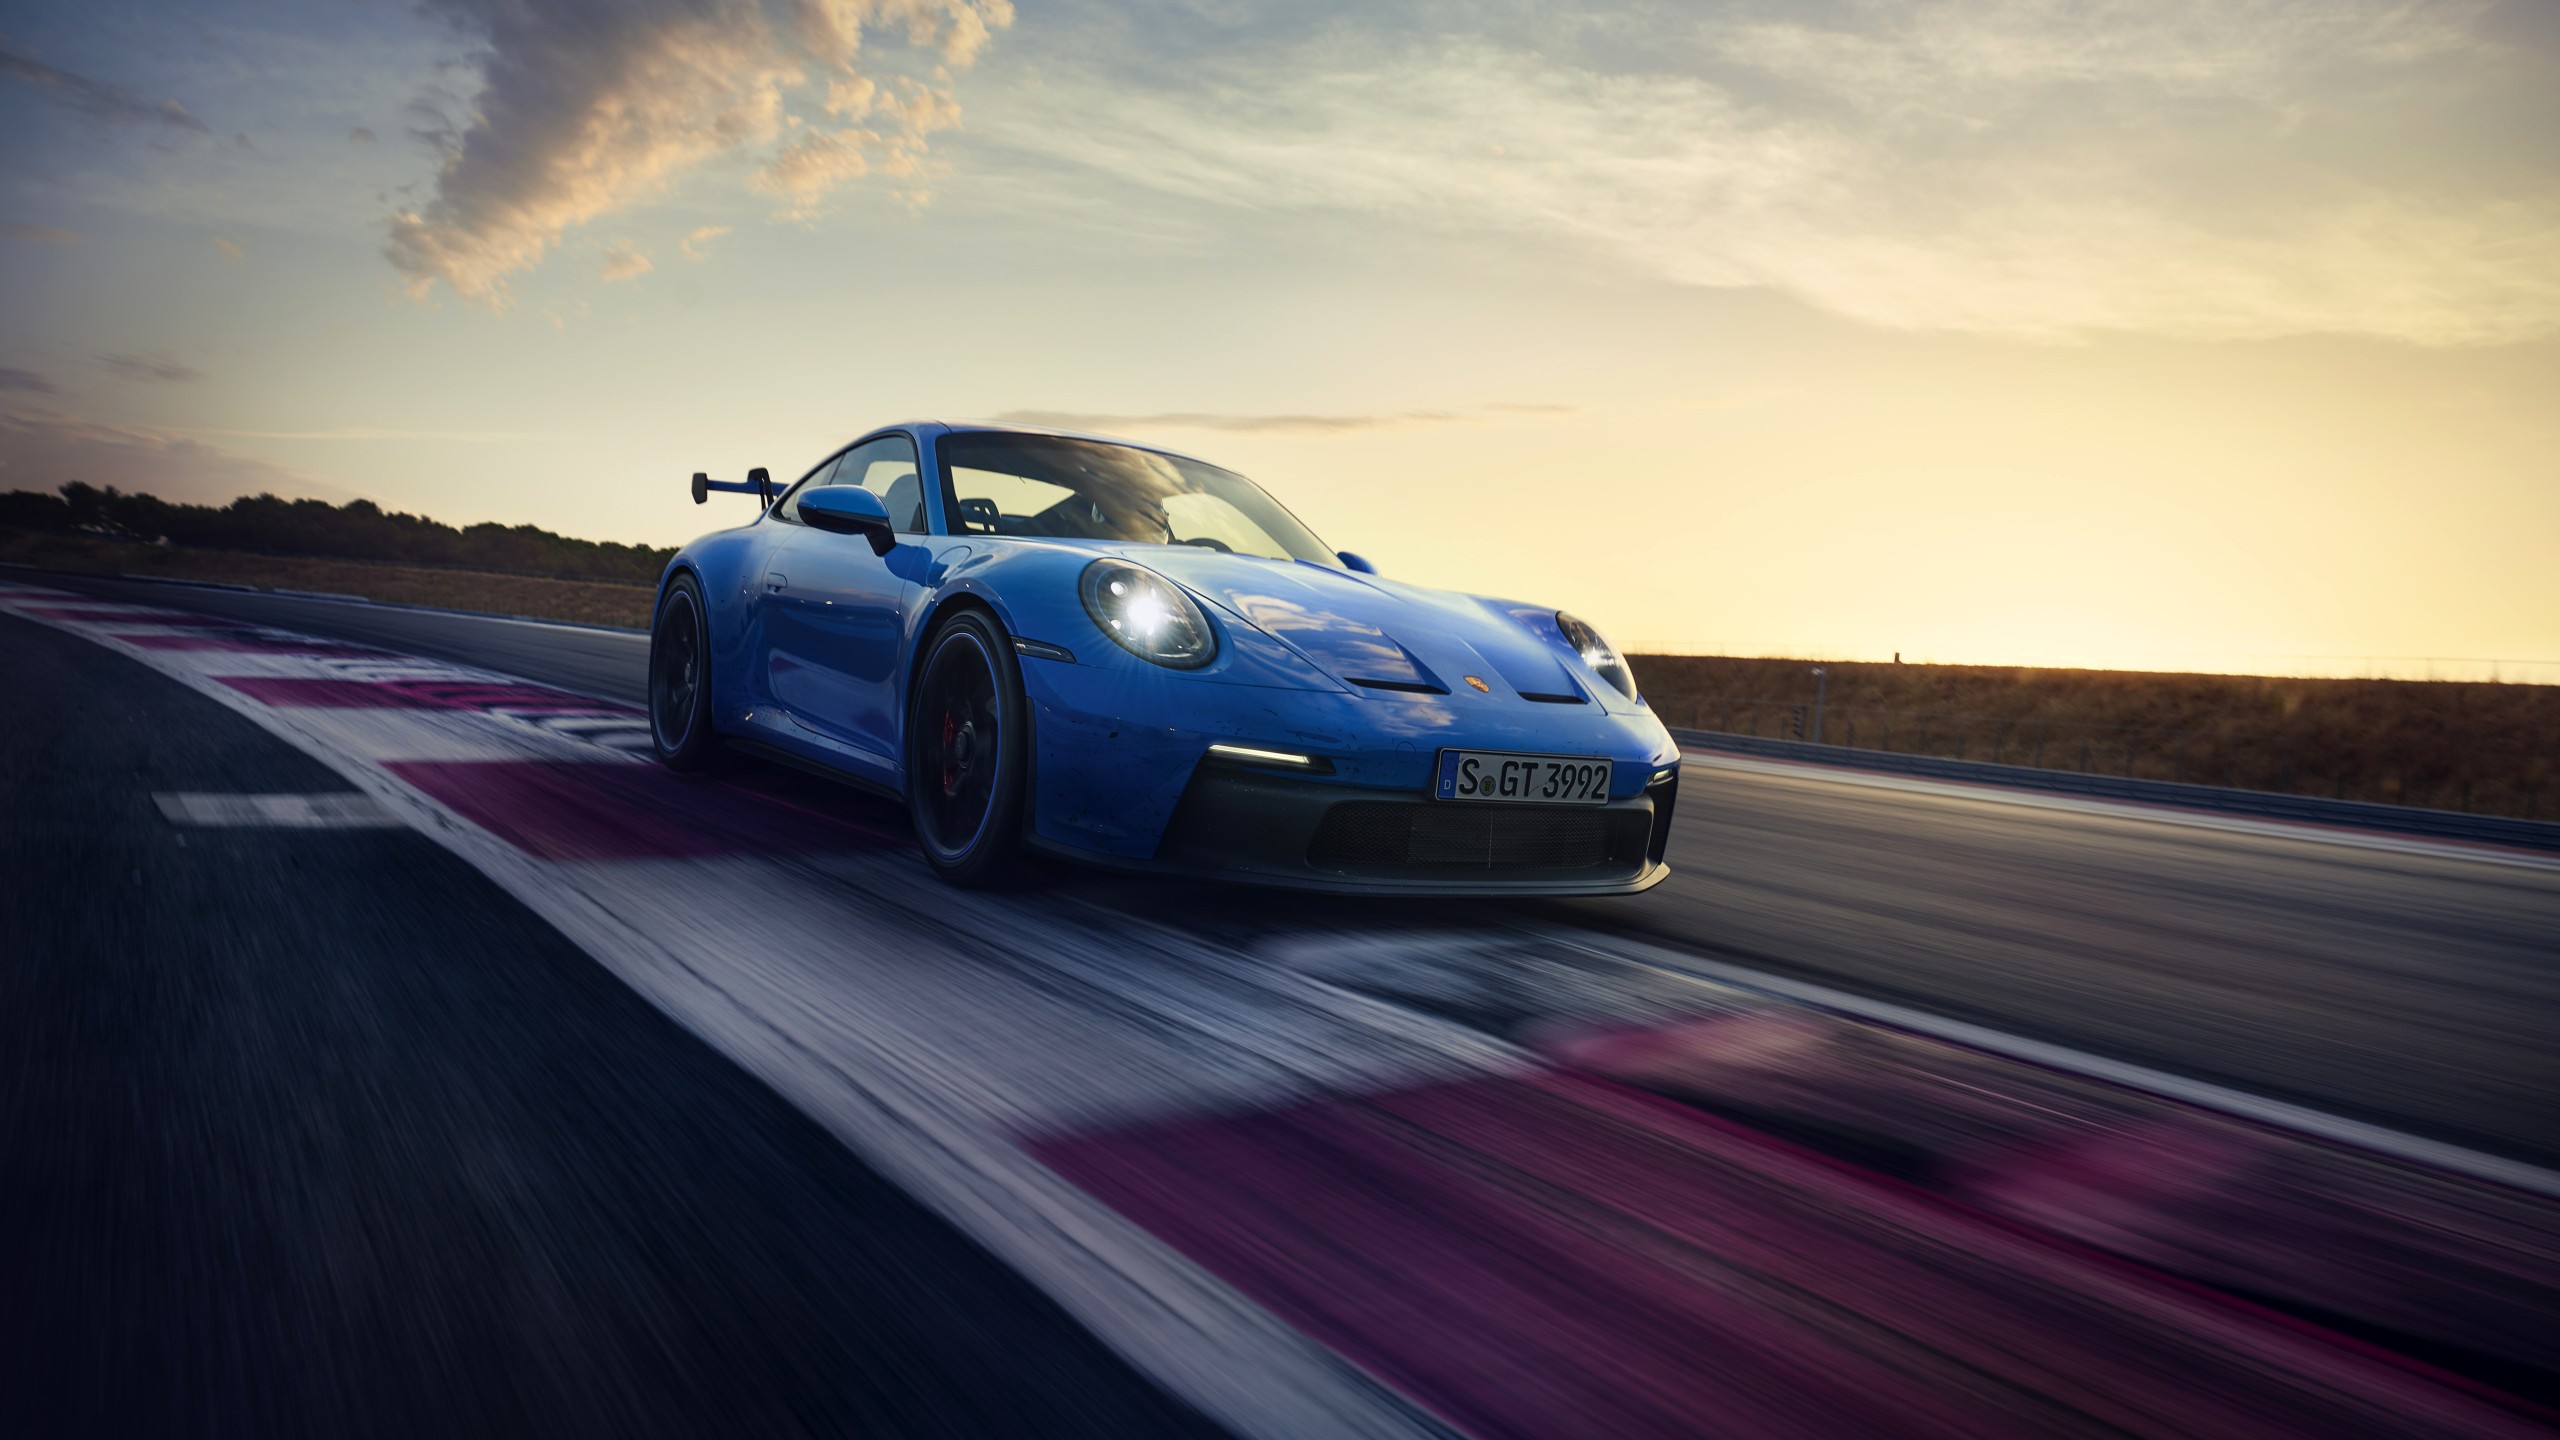 Porsche 911 GT3 2021 5K 5 Wallpaper | HD Car Wallpapers | ID #17383